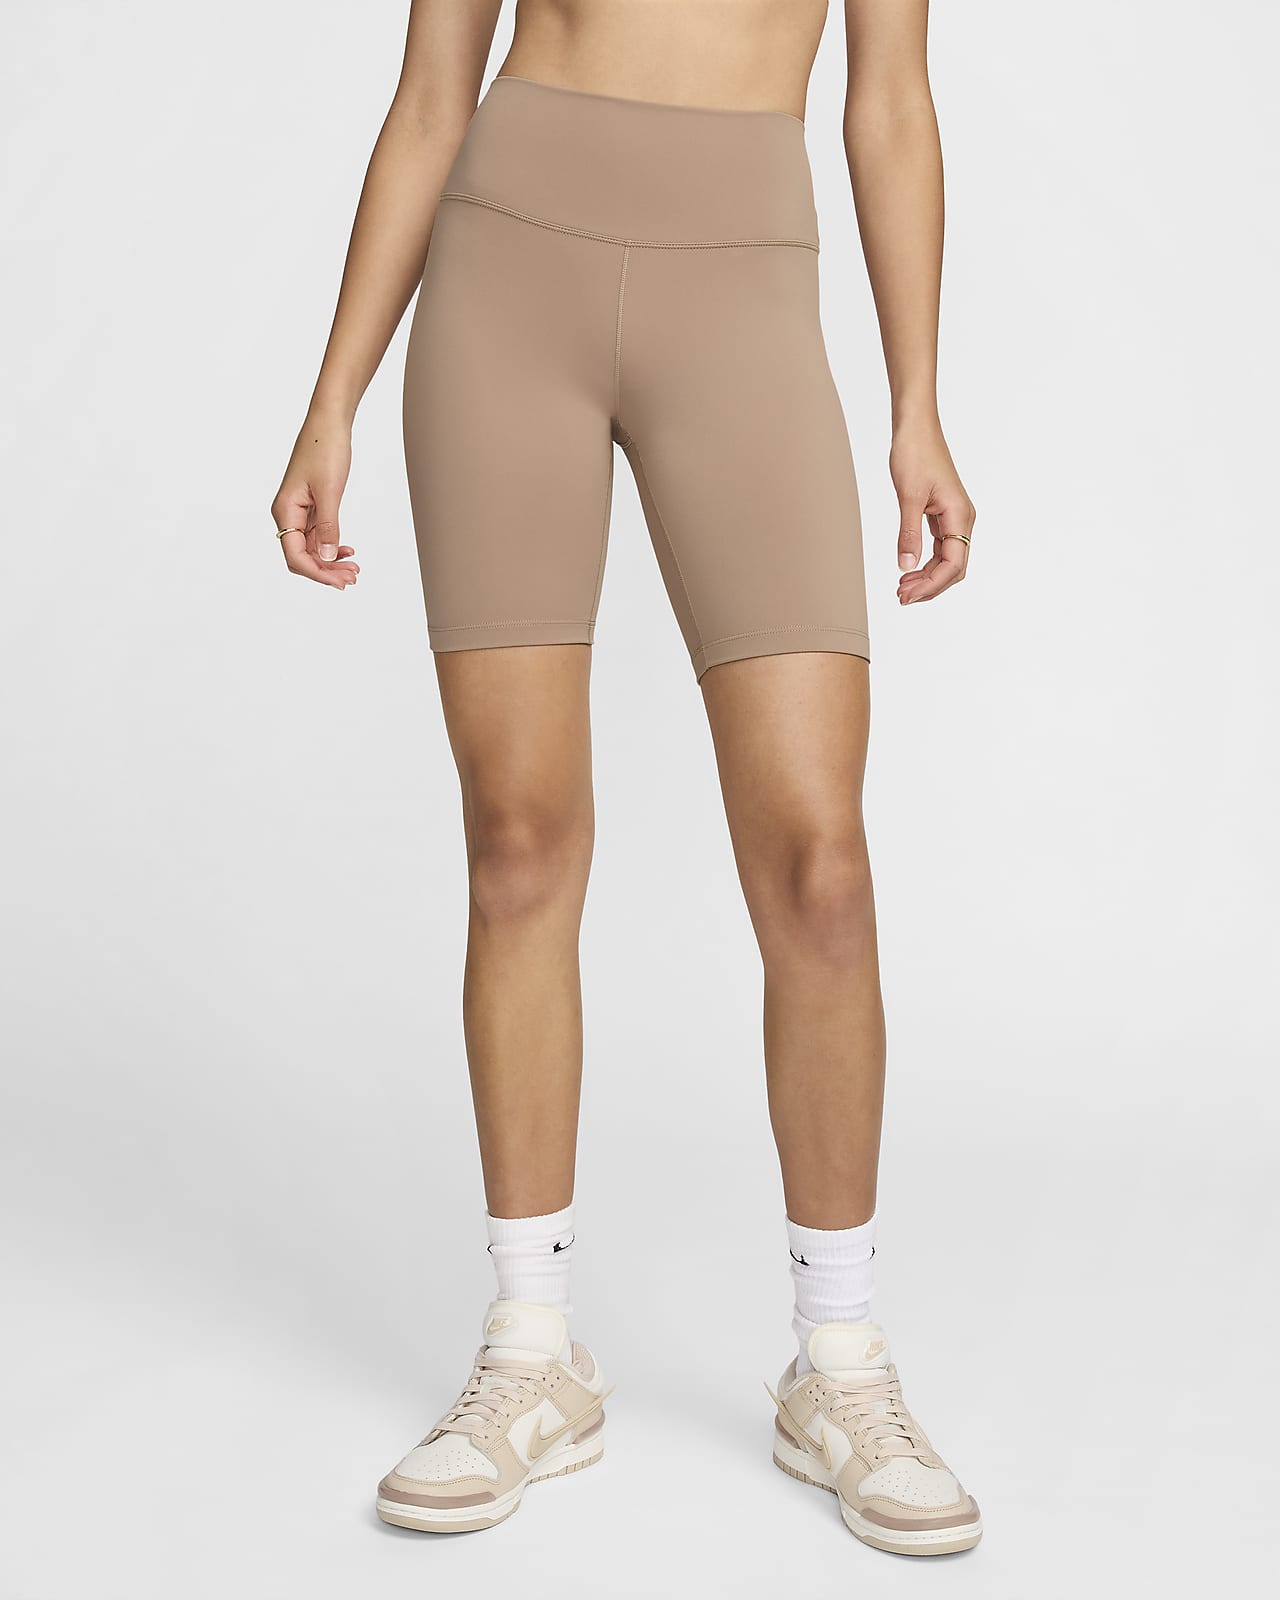 Nike One Mallas cortas de 20 cm y talle alto - Mujer